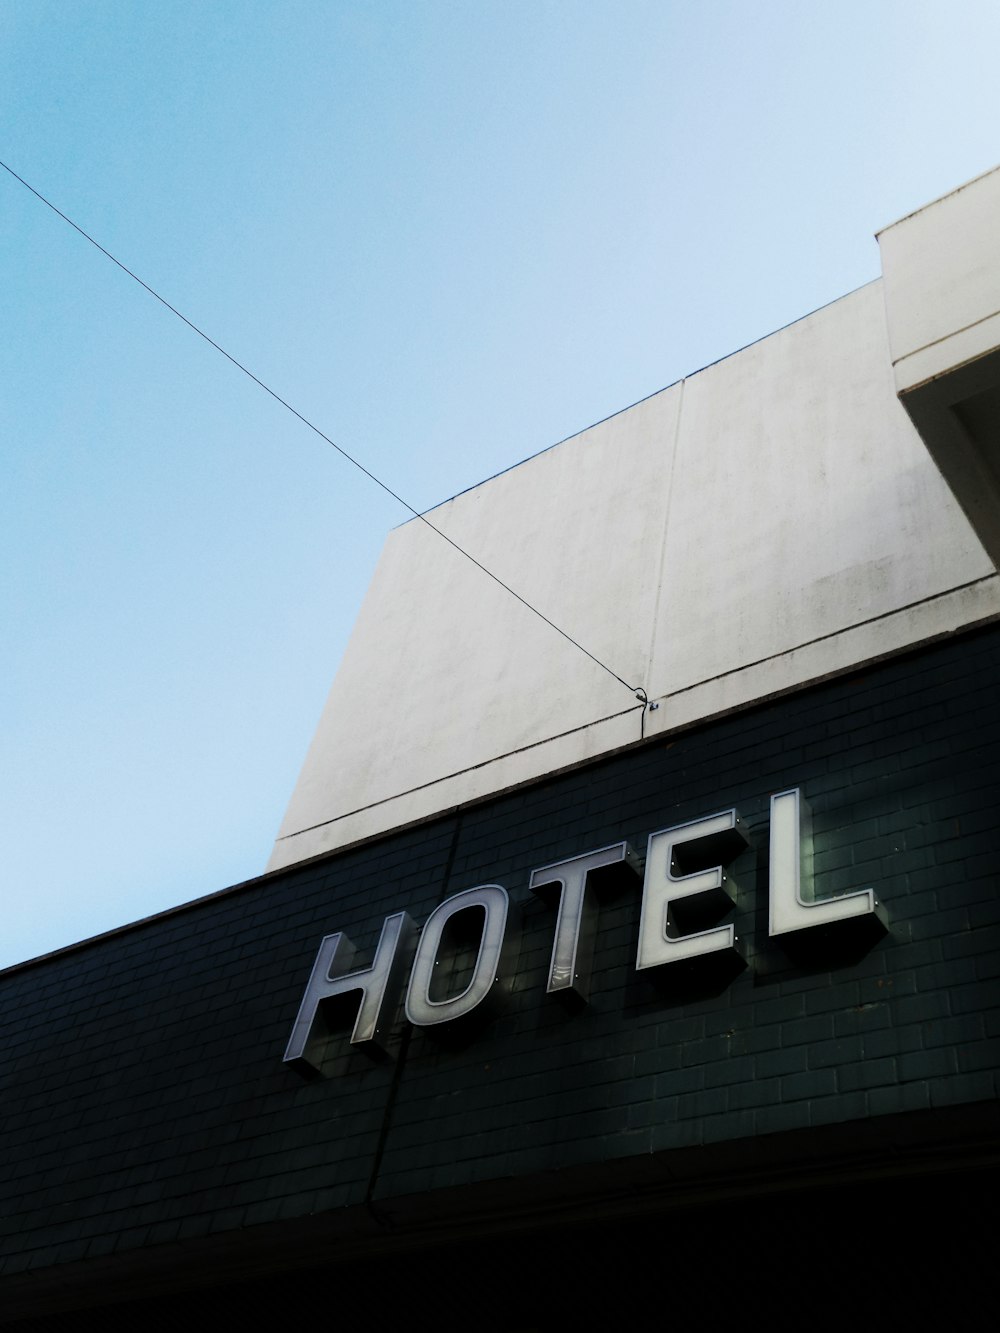 Edificio in cemento bianco e nero dell'hotel sotto un cielo blu calmo